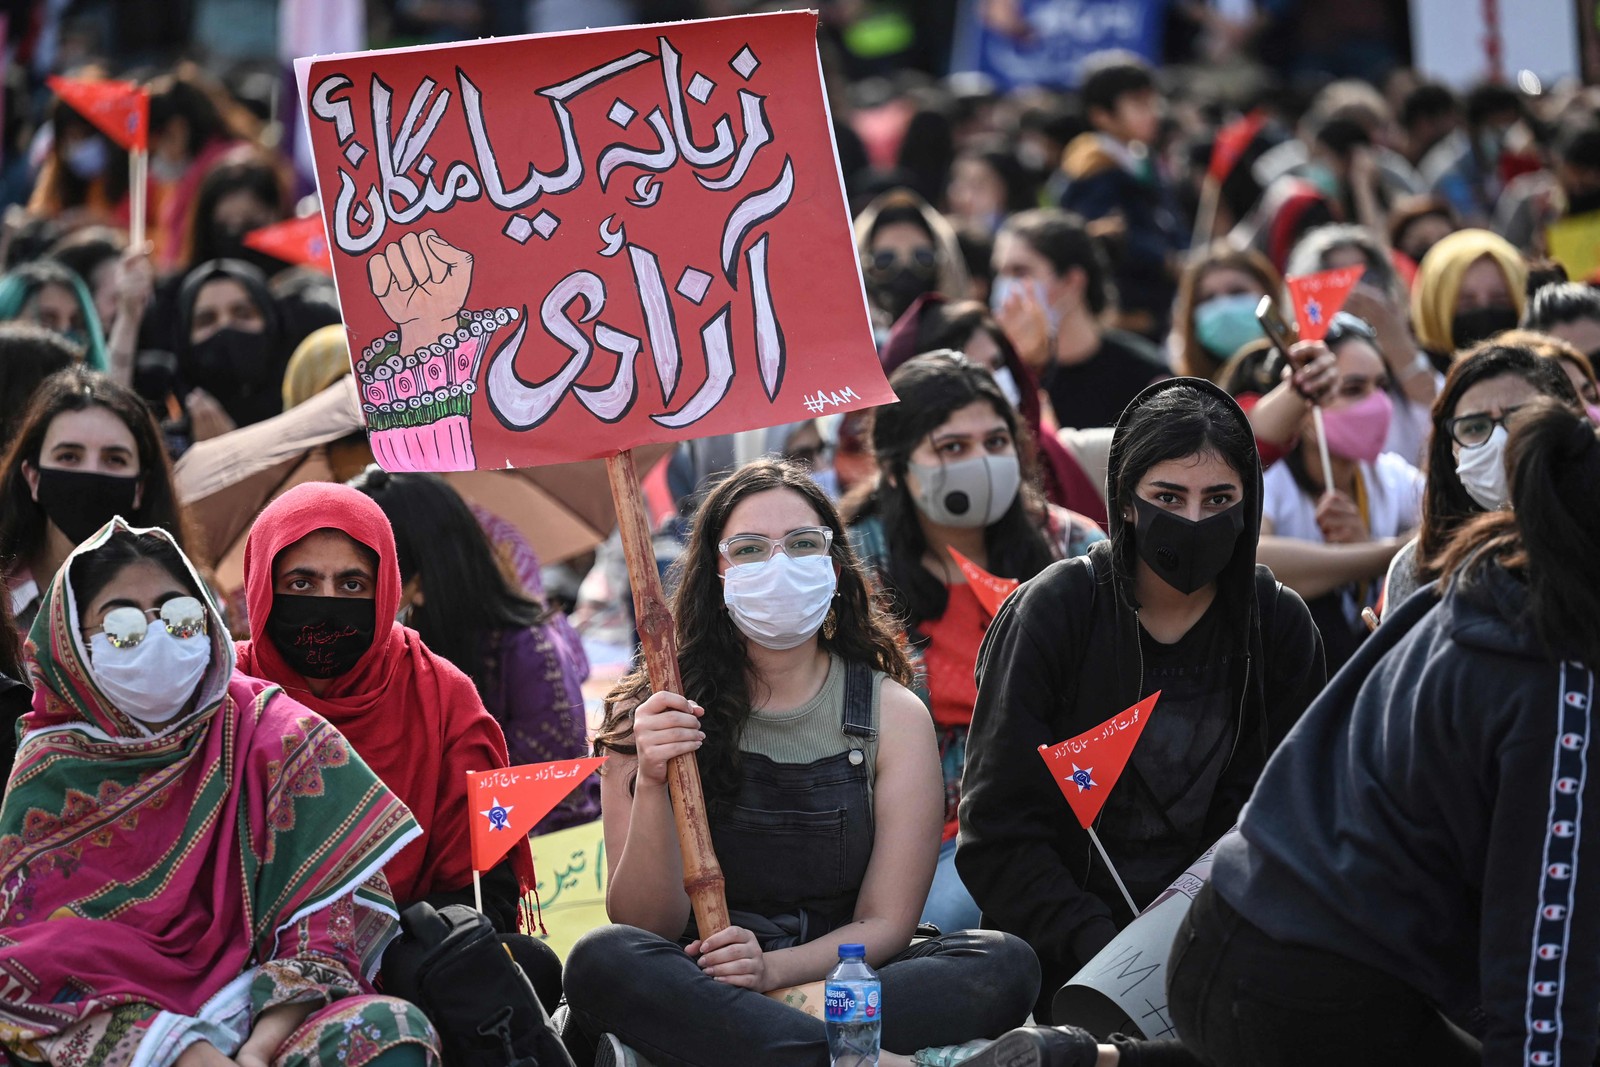 Ativistas da Marcha Aurat carregam cartazes durante uma manifestação para marcar o Dia Internacional da Mulher em Islamabad, capital do PaquistãoAFP